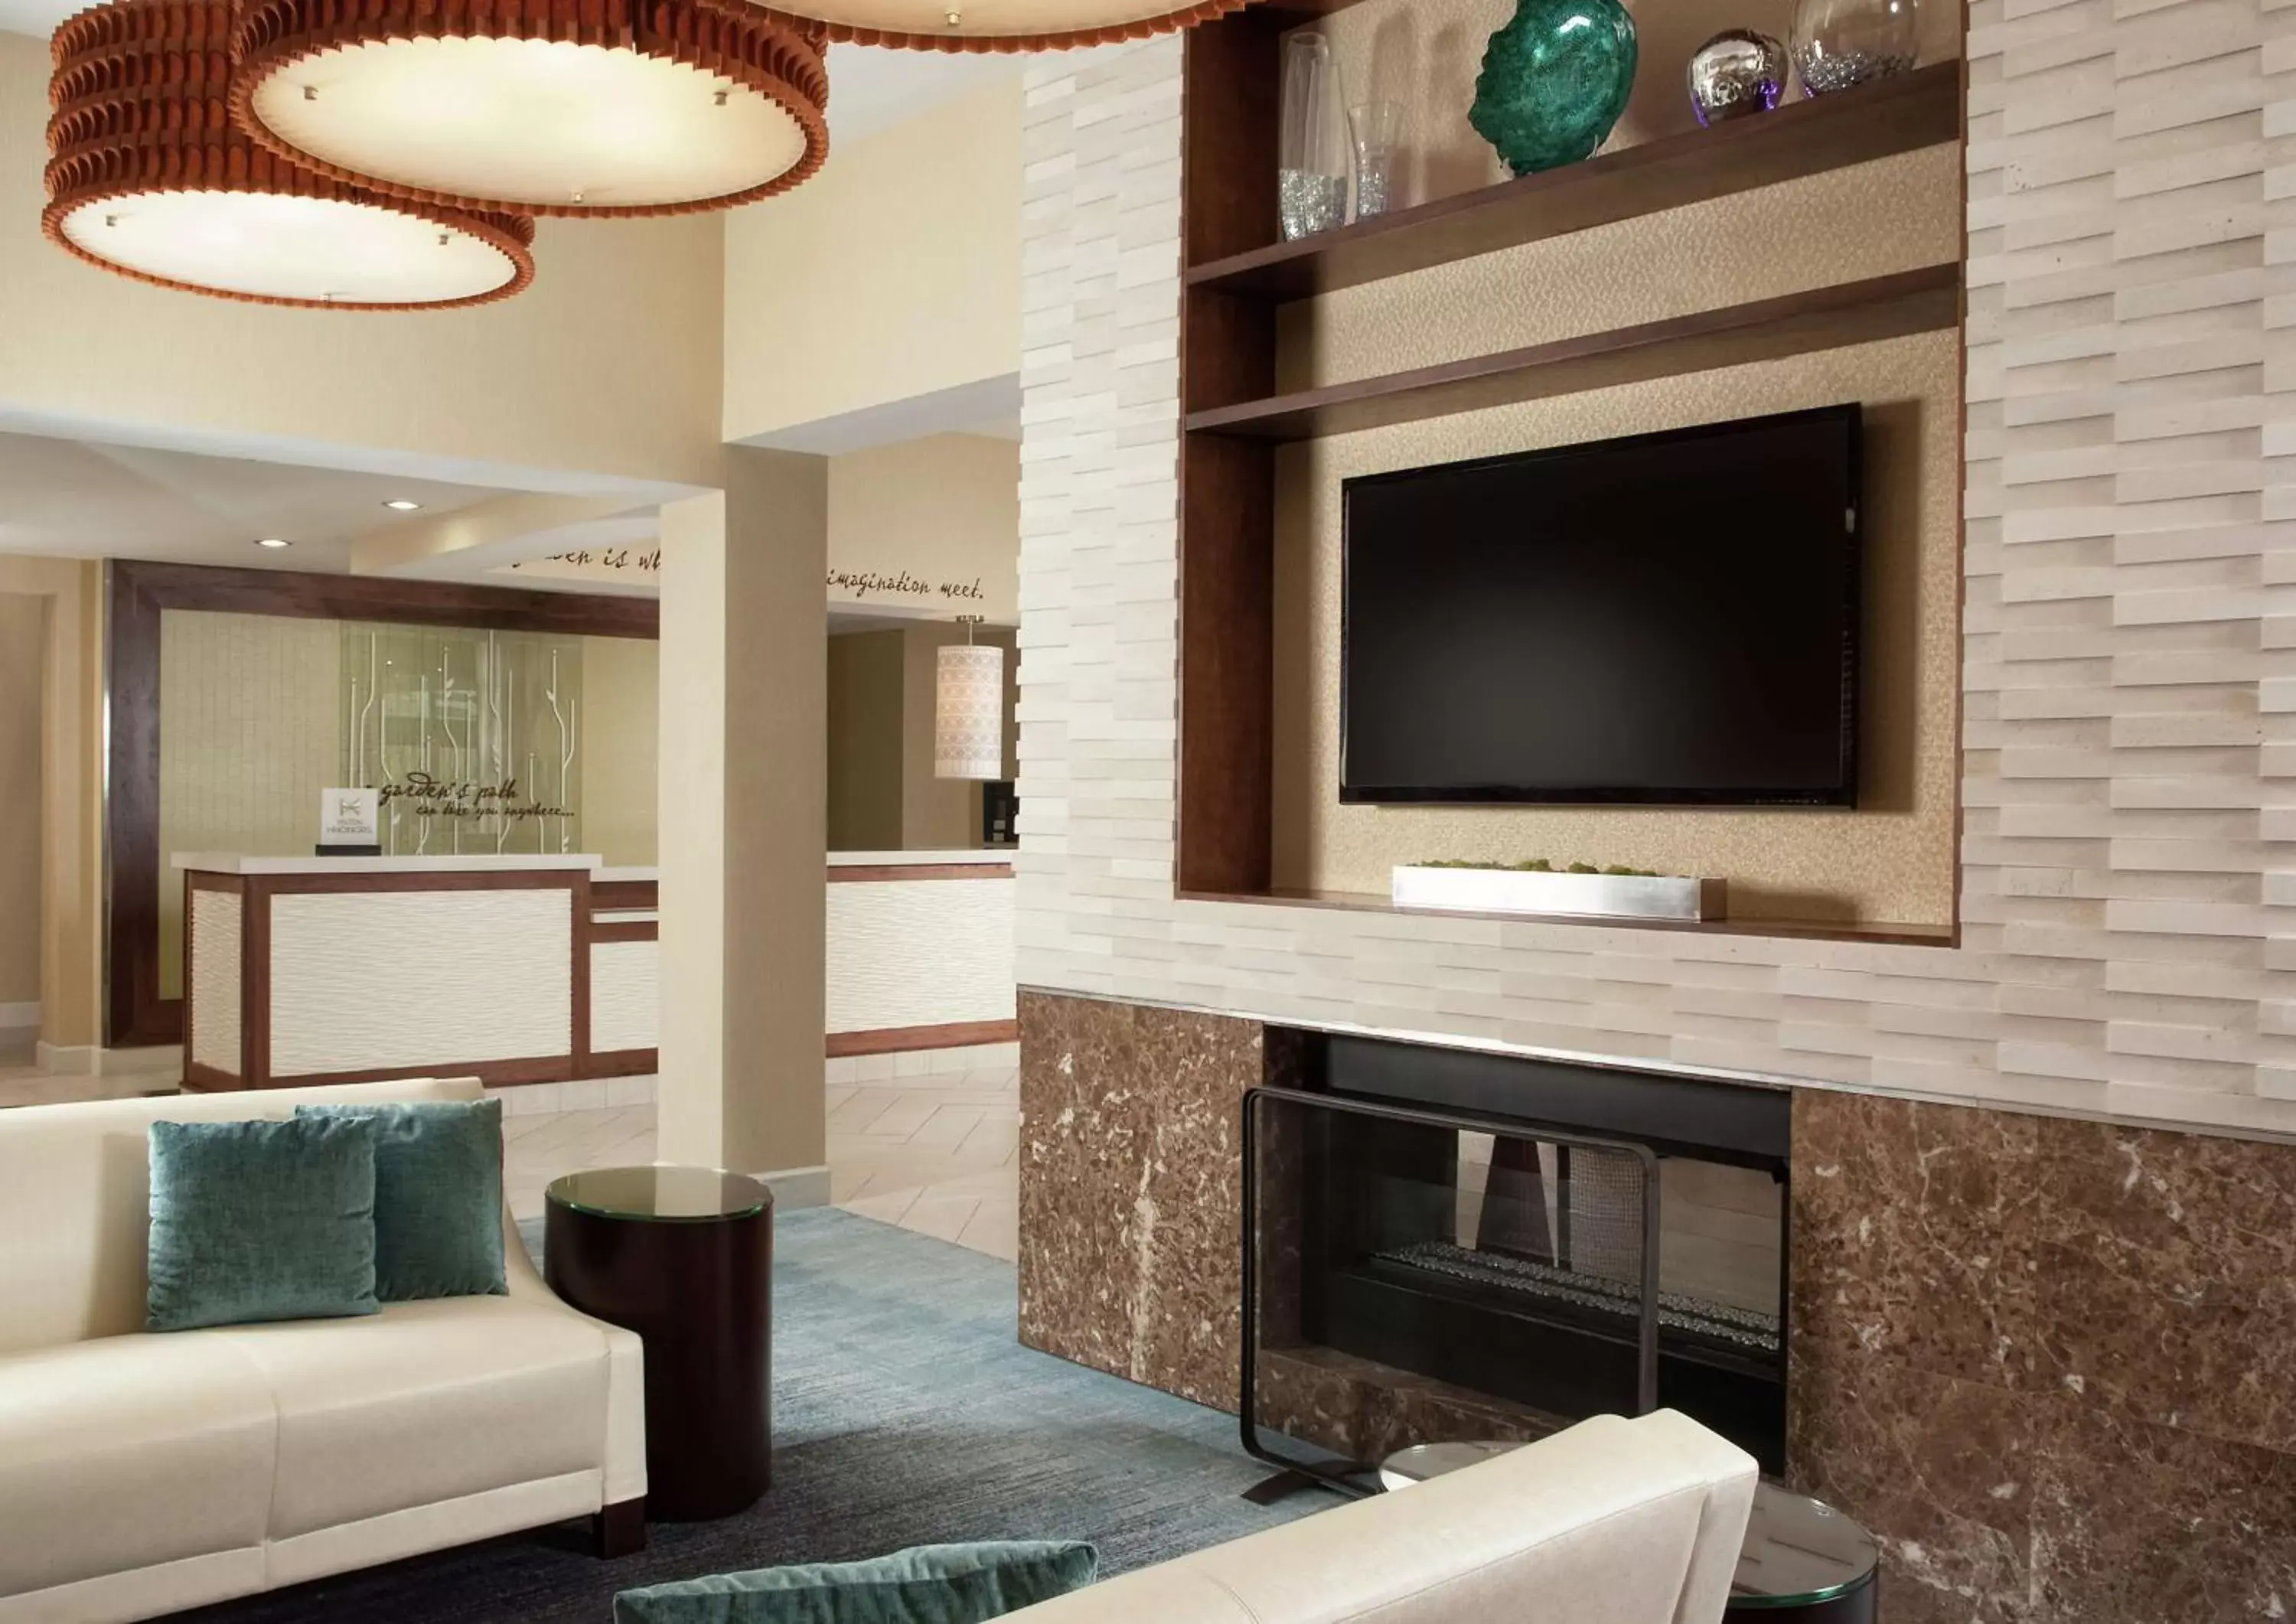 Lobby or reception, TV/Entertainment Center in Hilton Garden Inn Orlando Airport